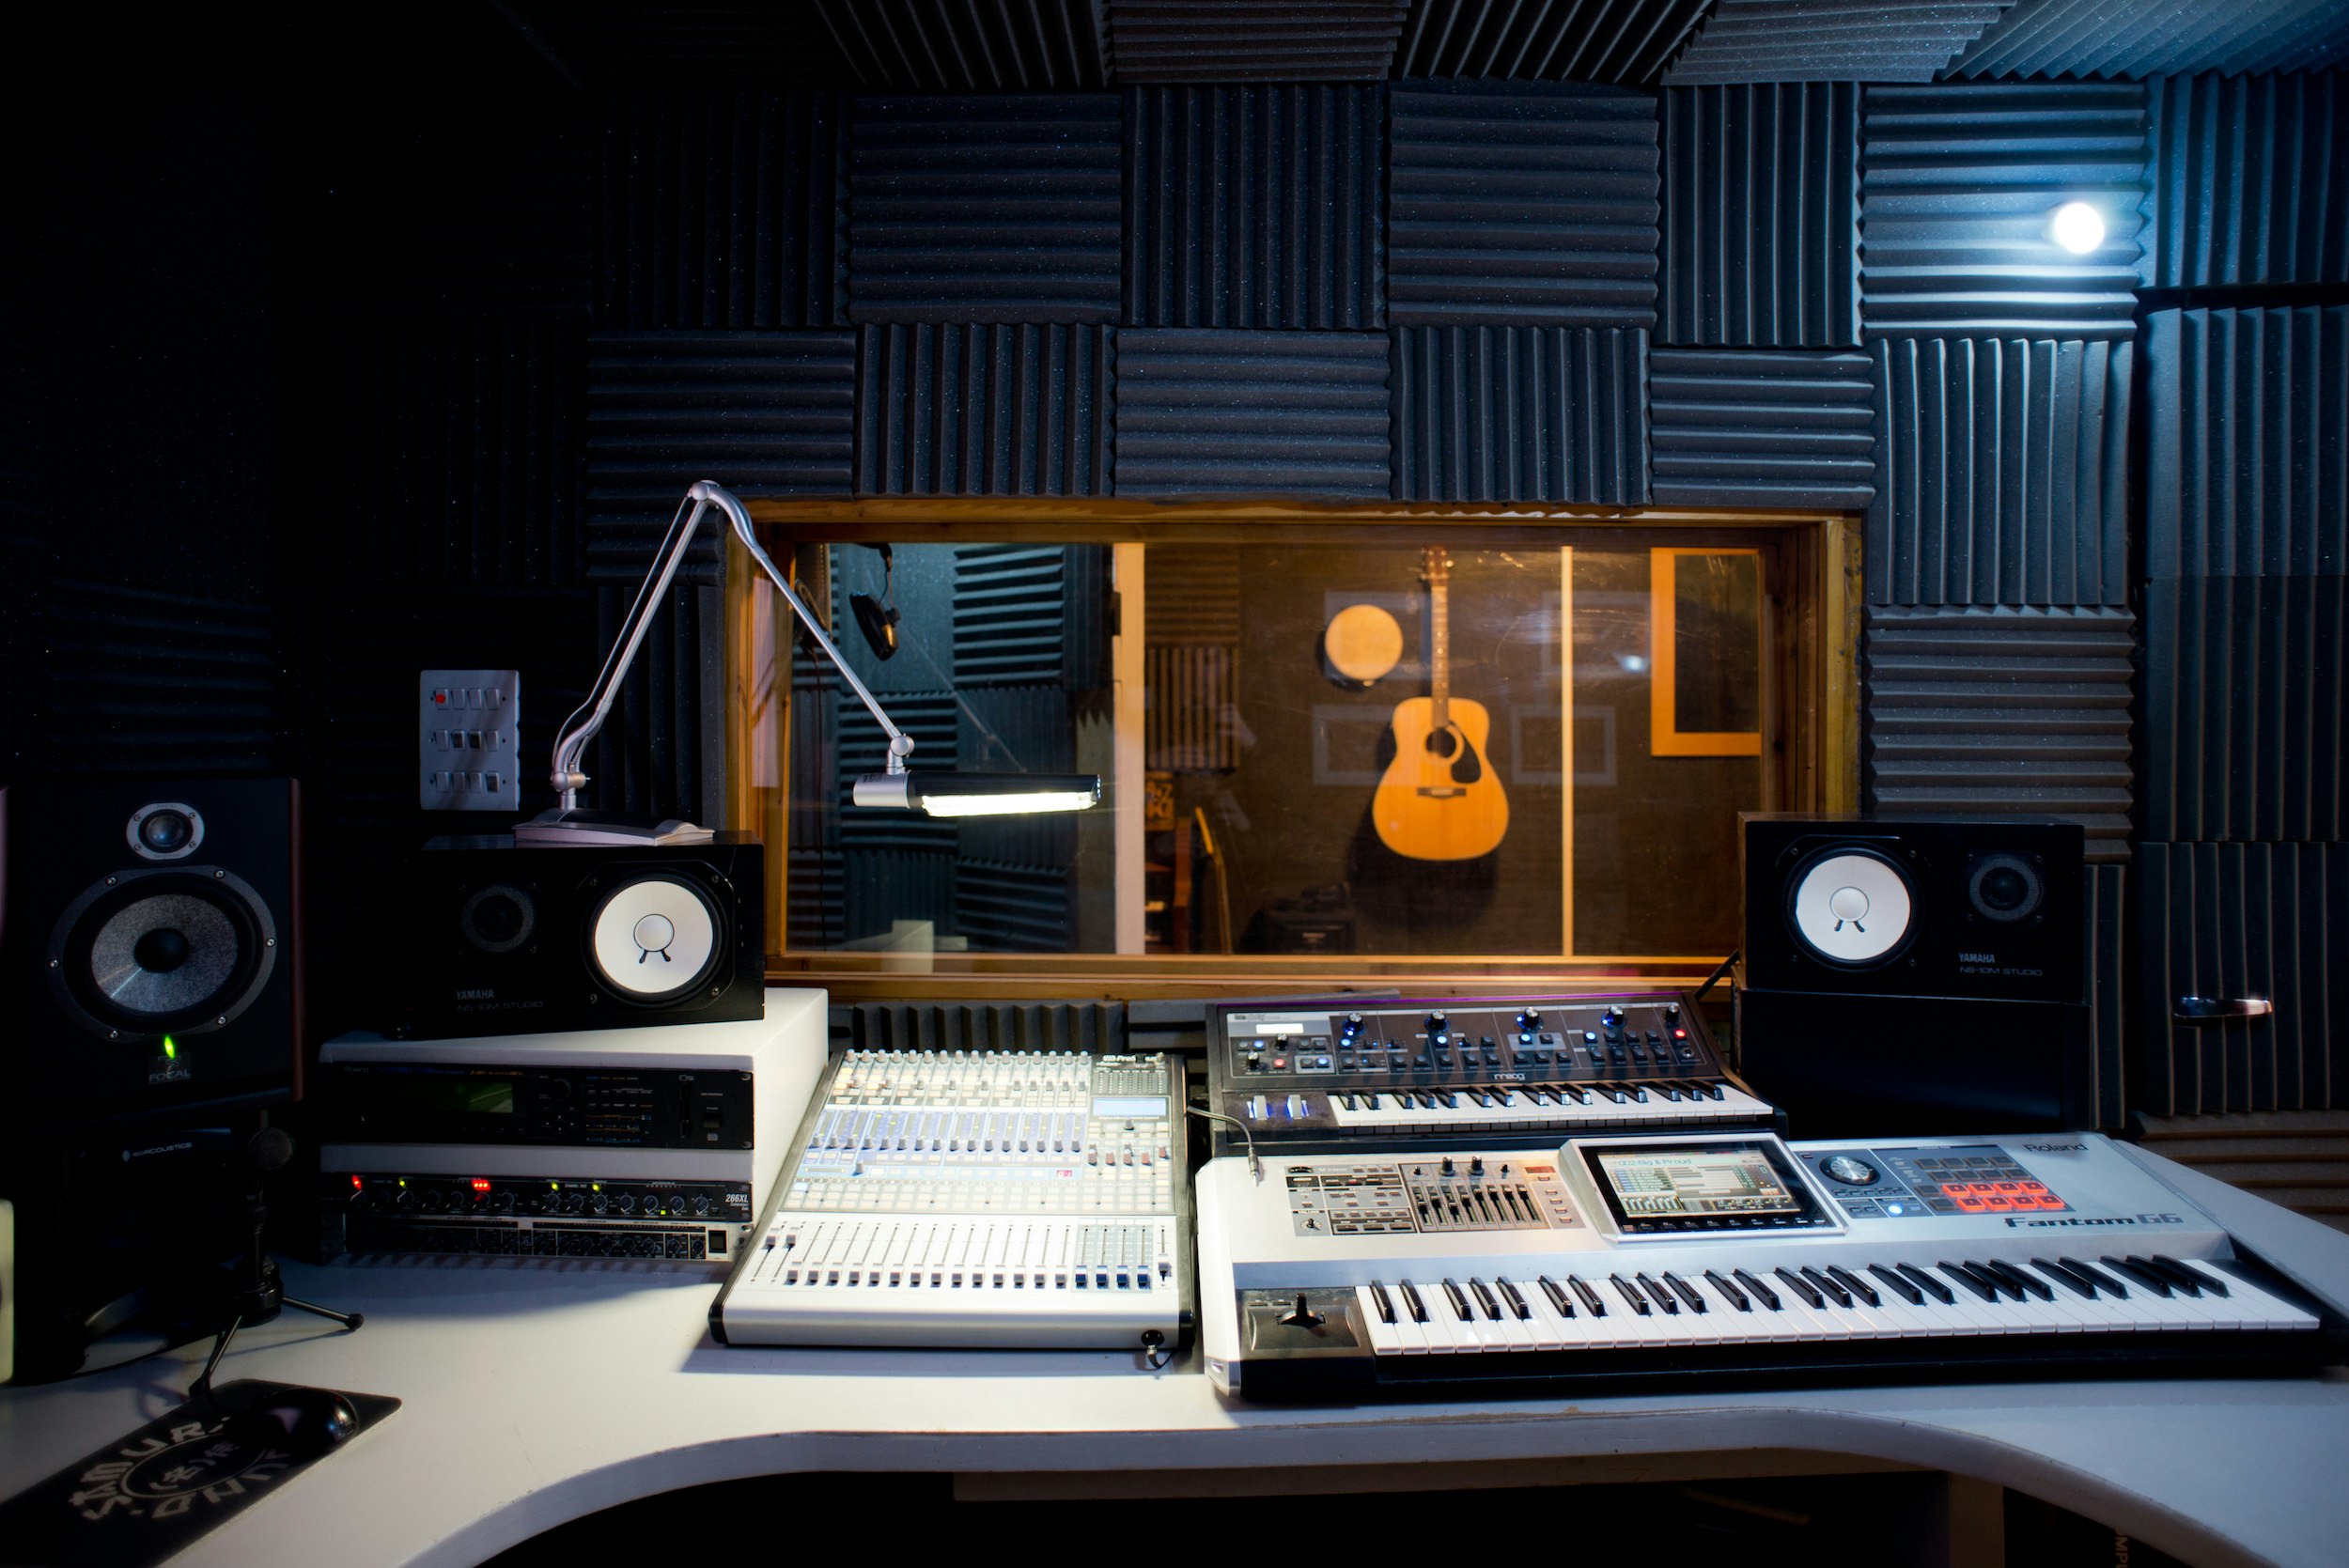 Samurai Creative Hub - Recording Studio image 4